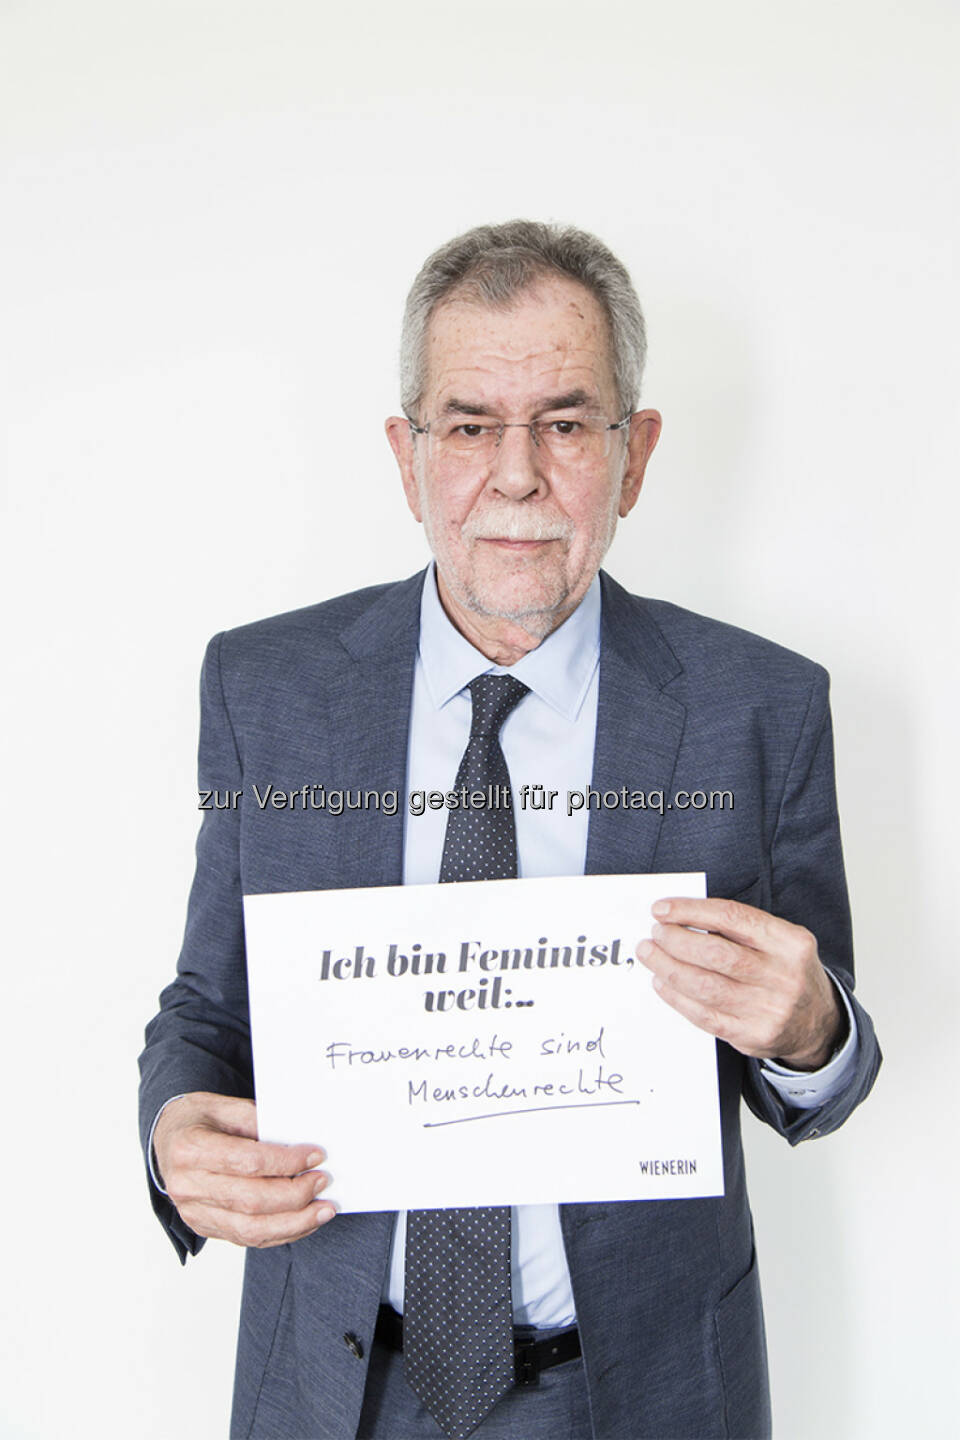 Alexander Van der Bellen : Wienerin-Kampagne kämpft mit prominenten Männern für Gleichberechtigung : Die Kampagne #IchBinFeminist holt sie vor den Vorhang : Männer, die Frauen zuhören, Männer, die Gleichberechtigung einfordern, Männer, die sich als Feministen bezeichnen : Fotocredit: wienerin/©Lydia Stöckl